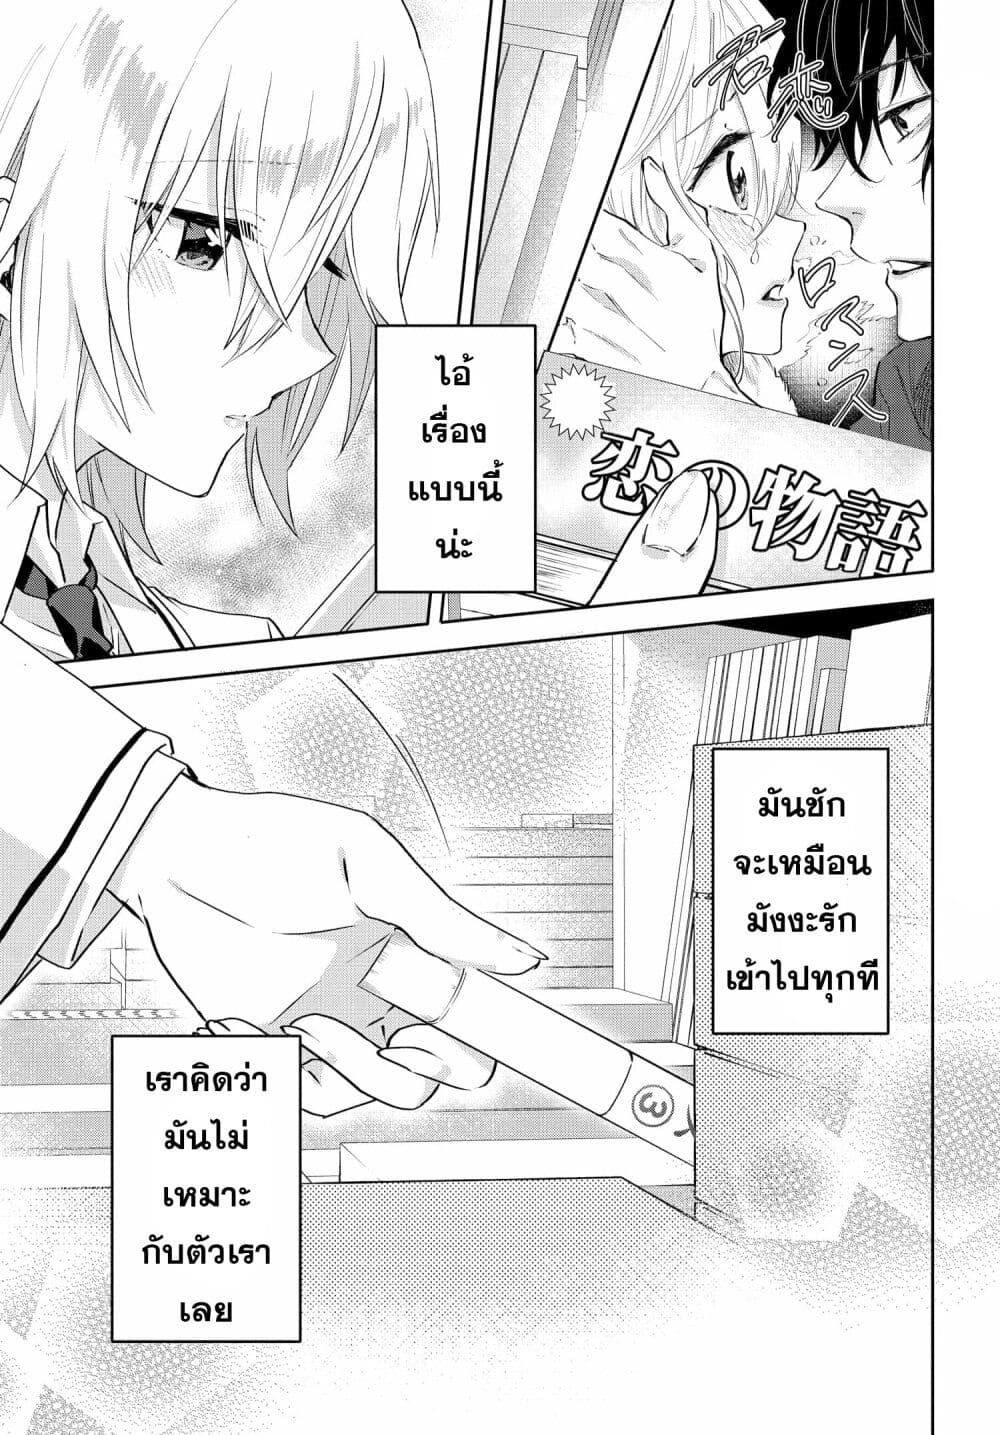 Romcom Manga ni Haitte Shimatta no de 2.1 03